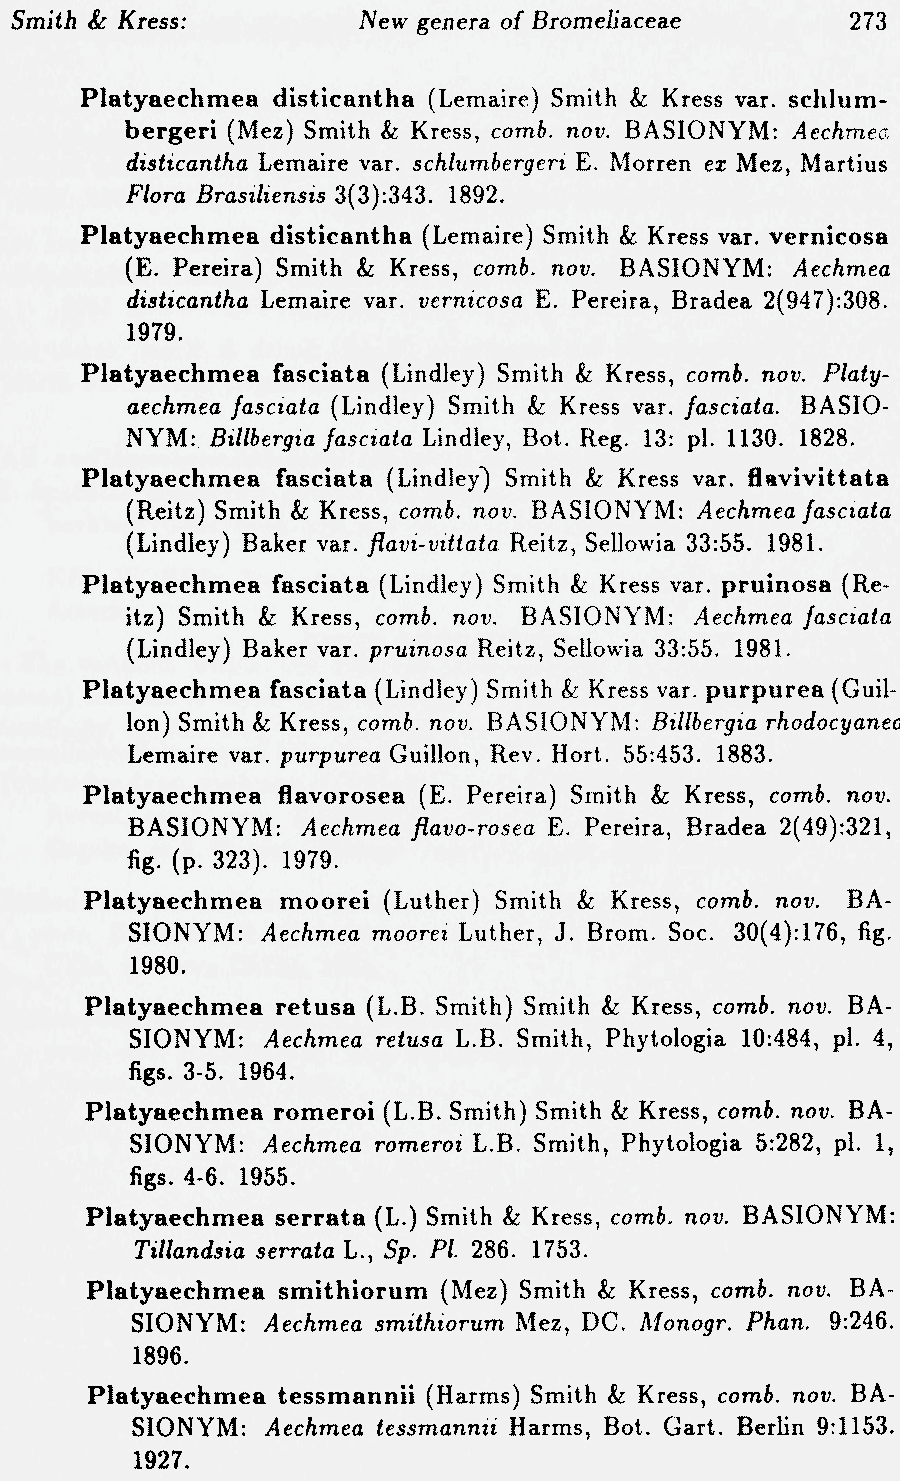 https://forum.plantarium.ru/misc.php?action=pun_attachment&amp;item=26802